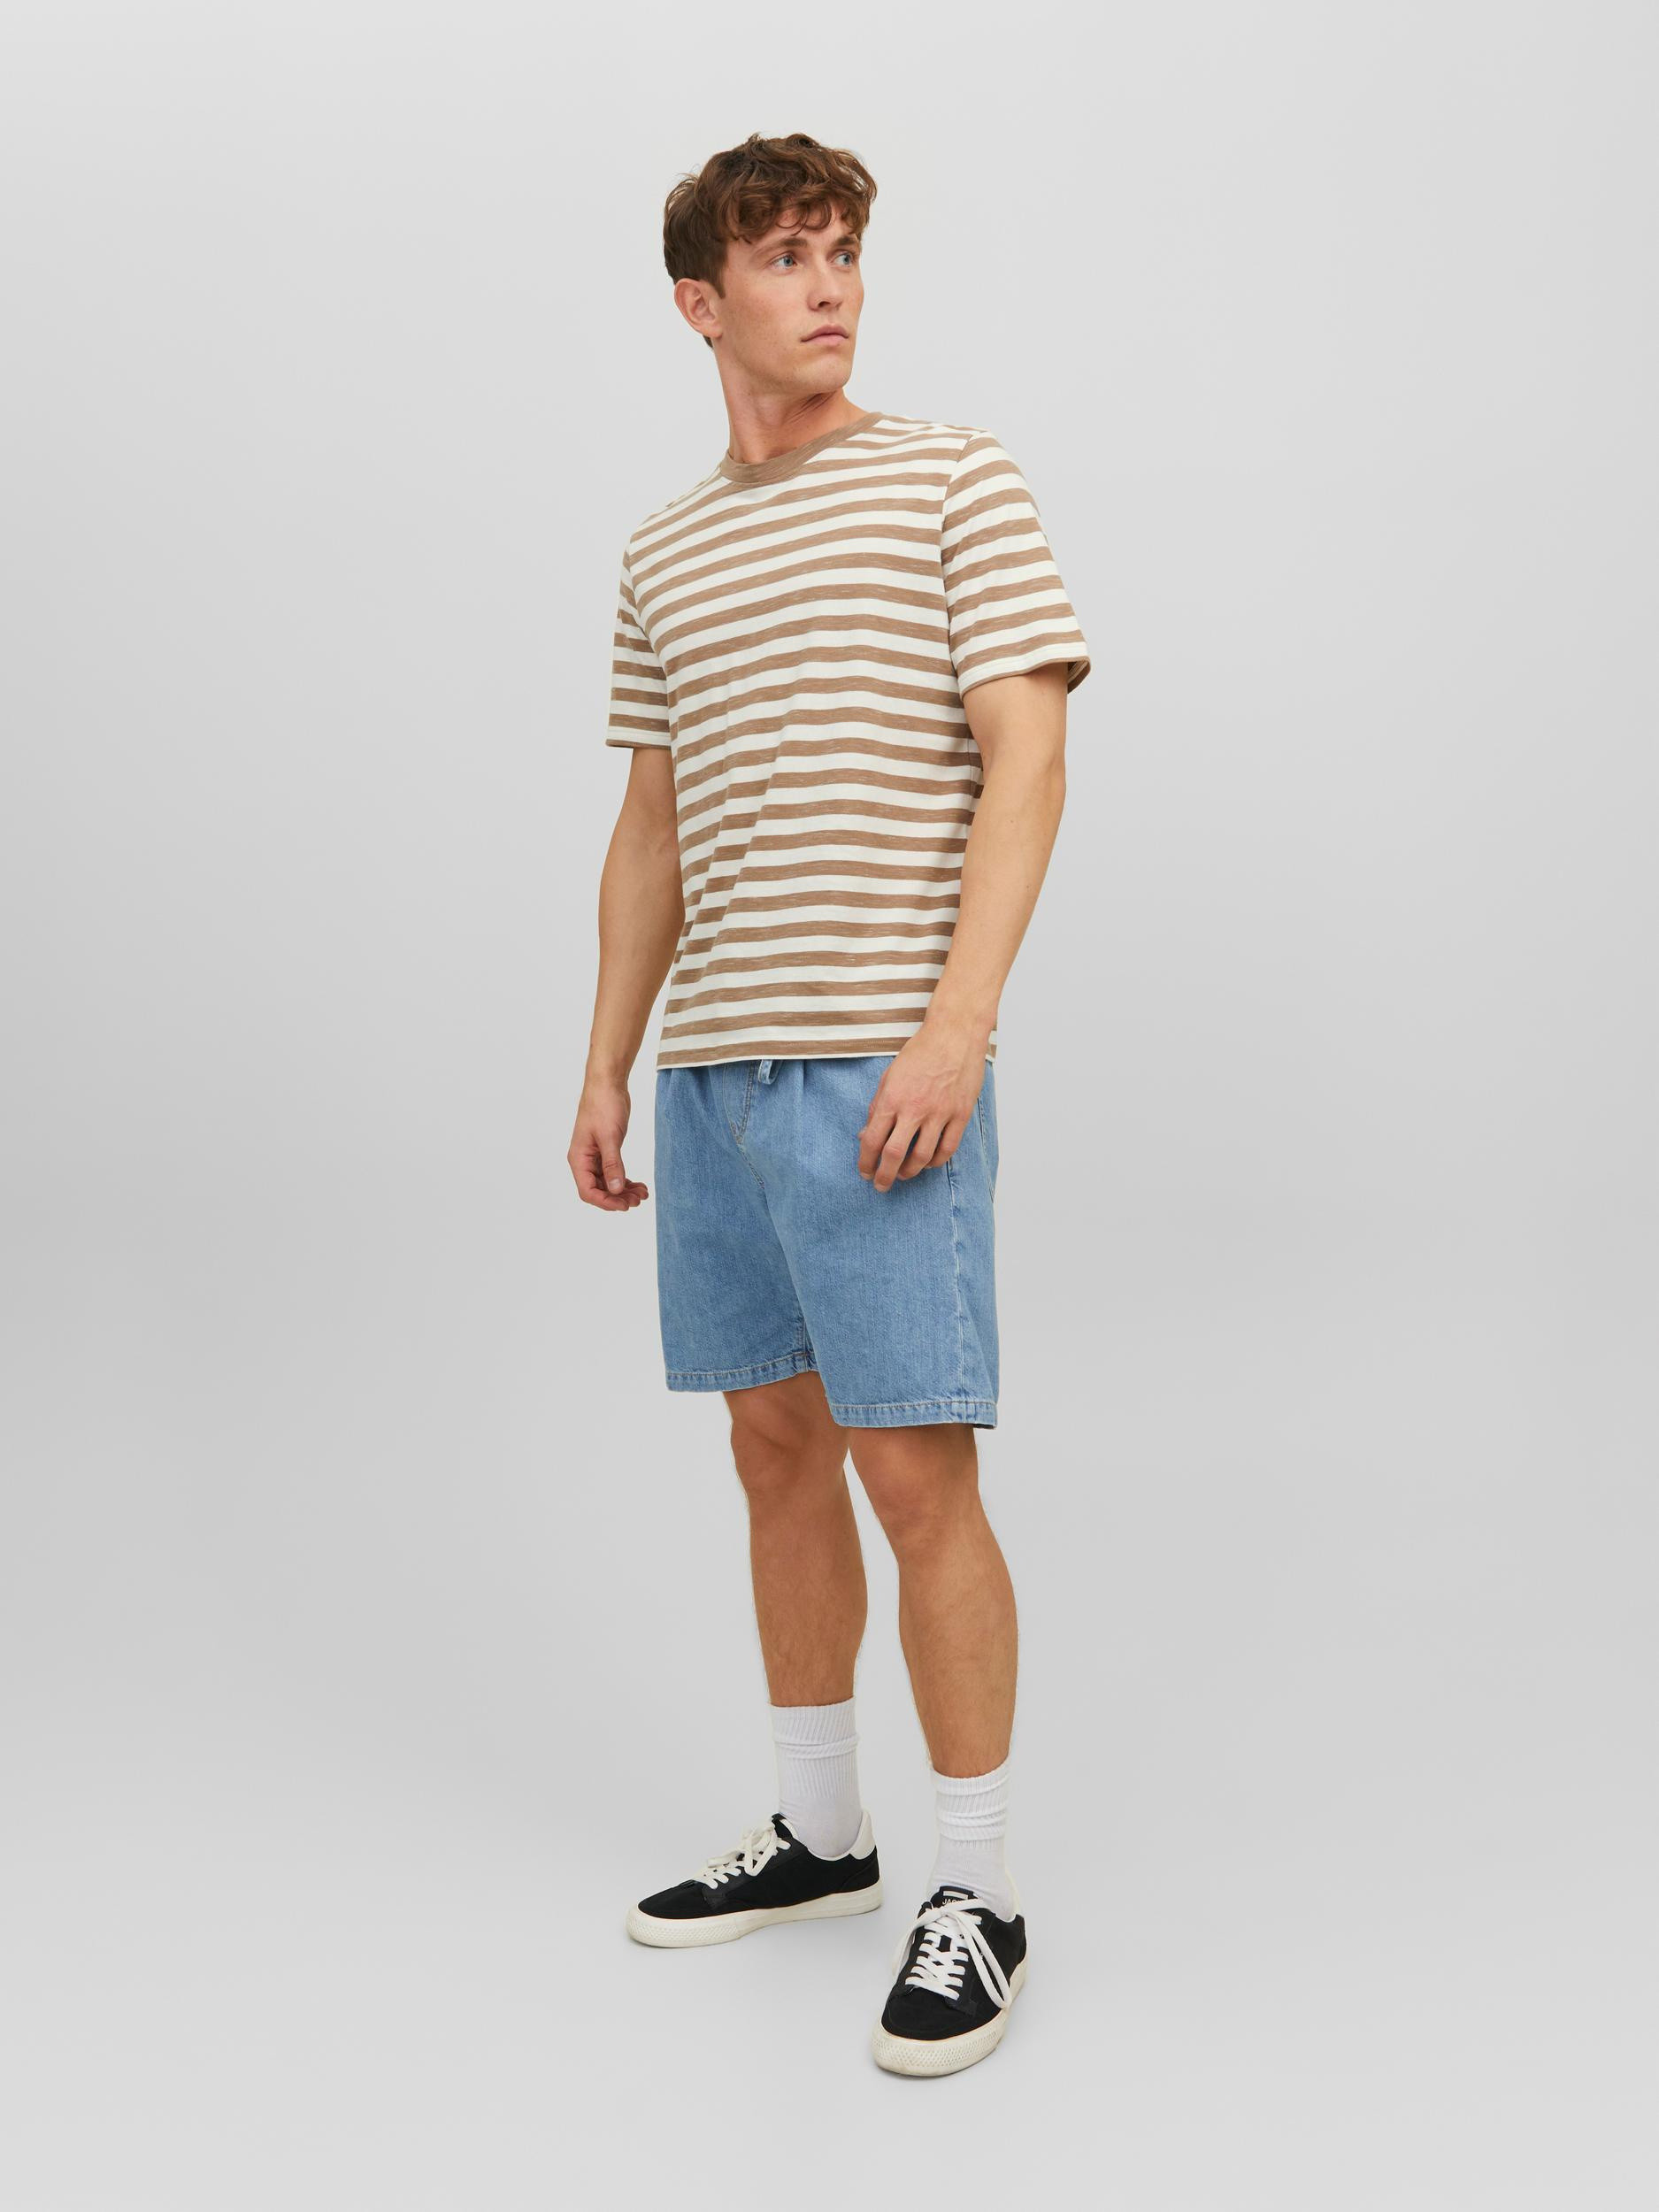 Jack & Jones - Striped T-Shirt, Beige, large image number 5